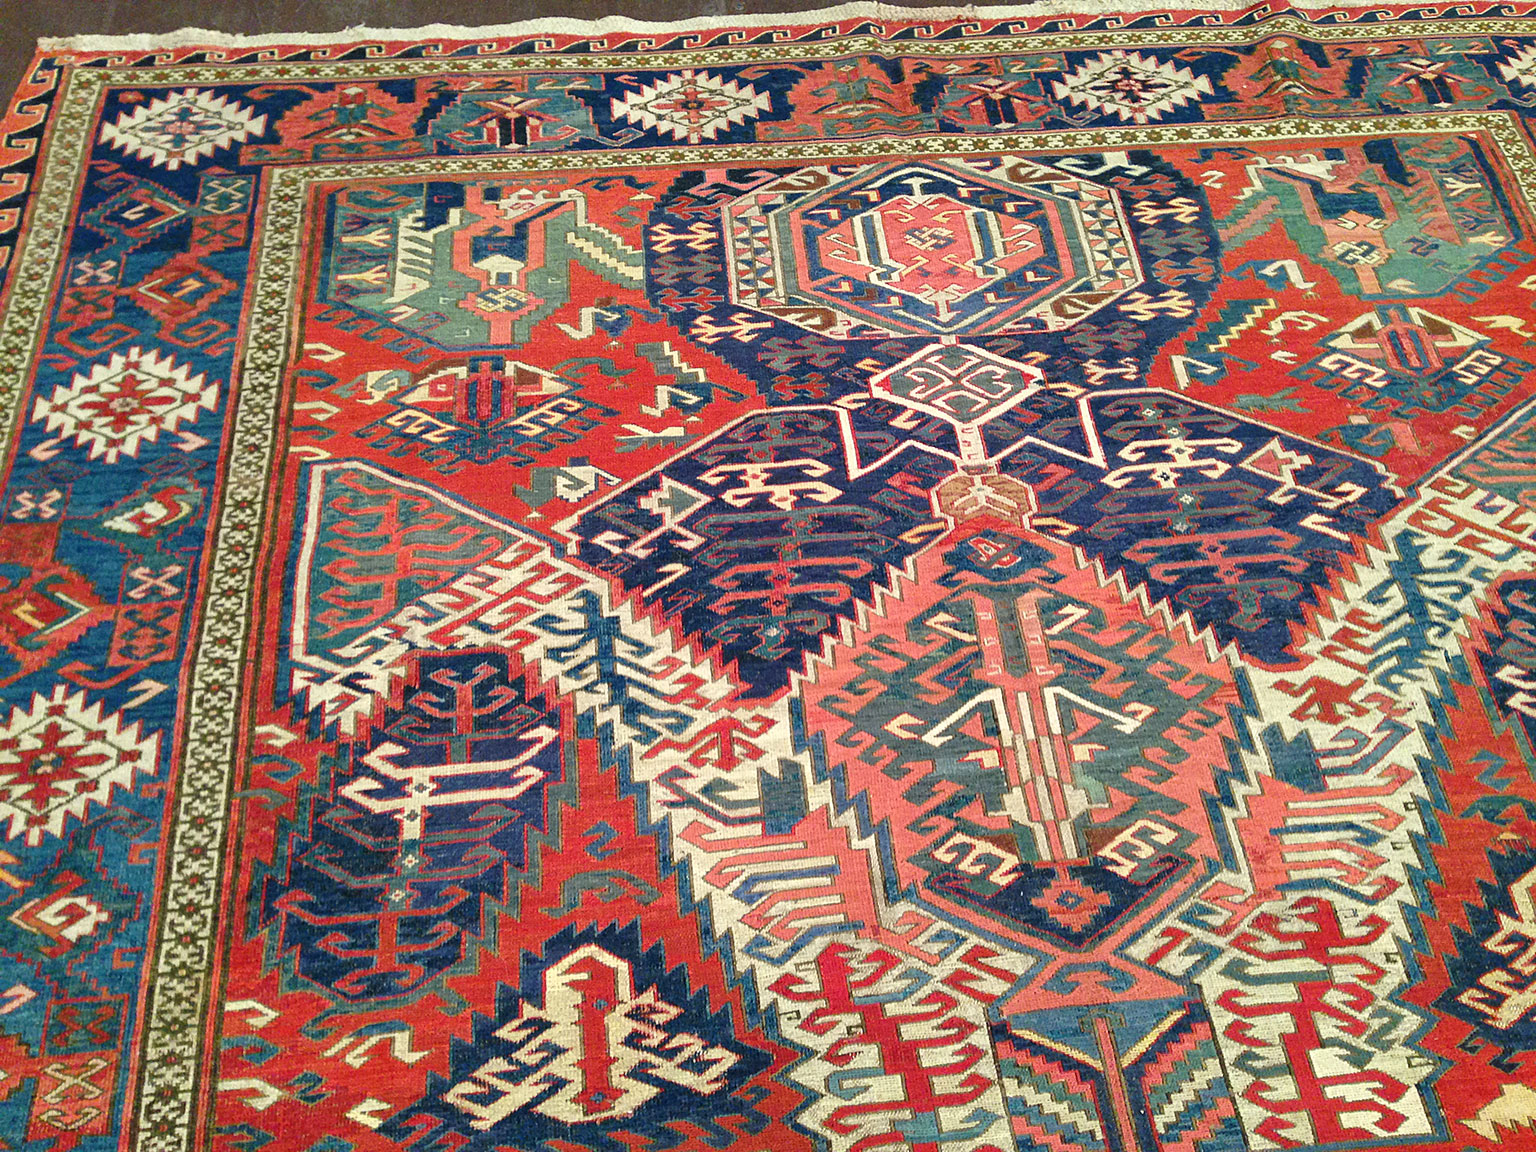 Antique soumac Carpet - # 50892